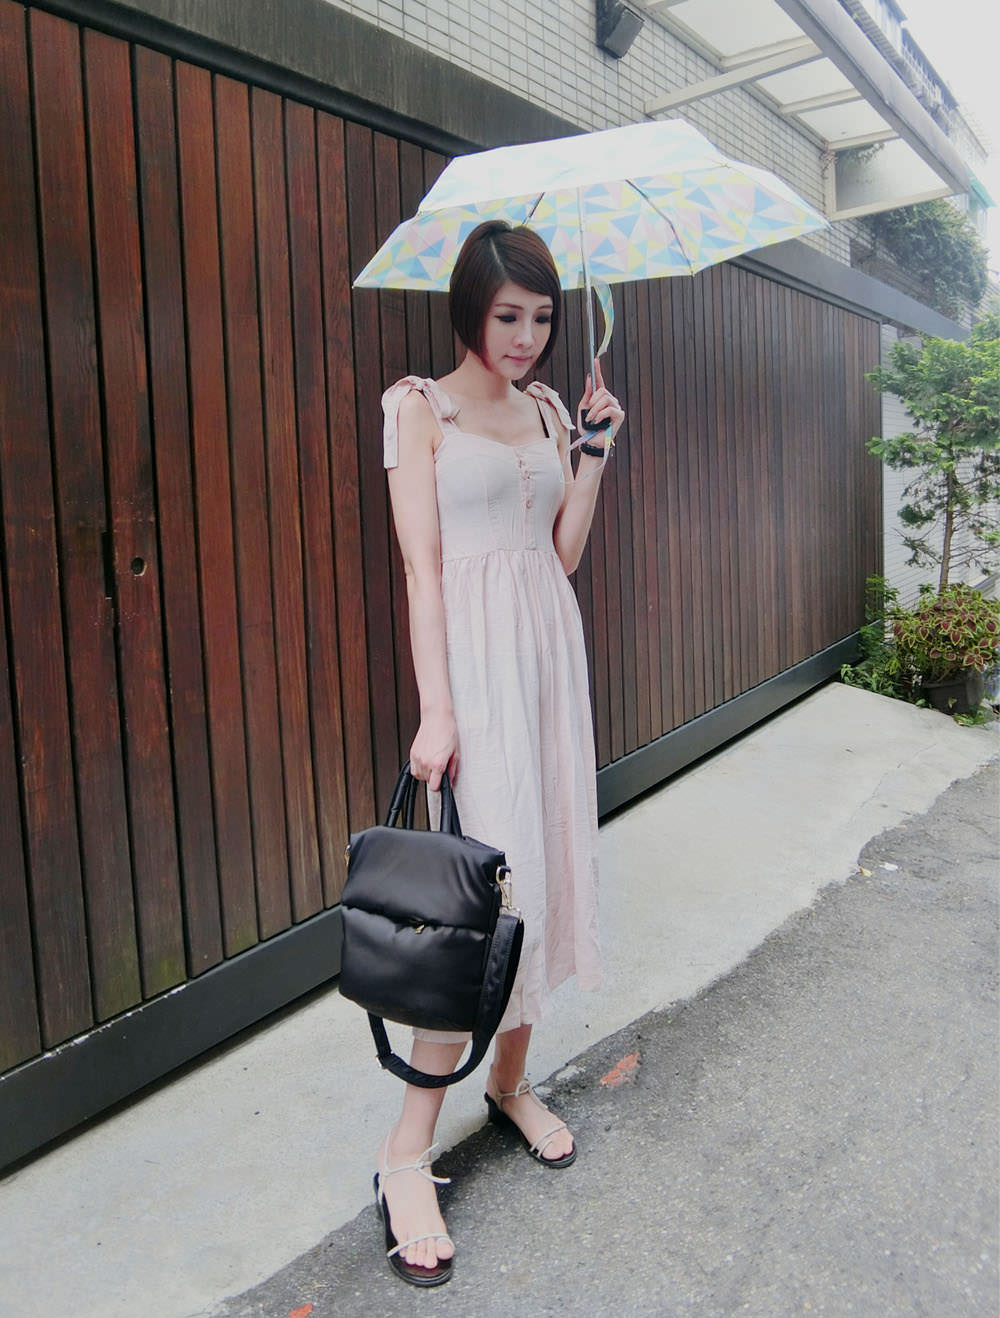 [雨具] 日本KIU下雨天出門也要輕便又時尚,讓雨具讓外出大加分-雨傘/雨衣/雨鞋